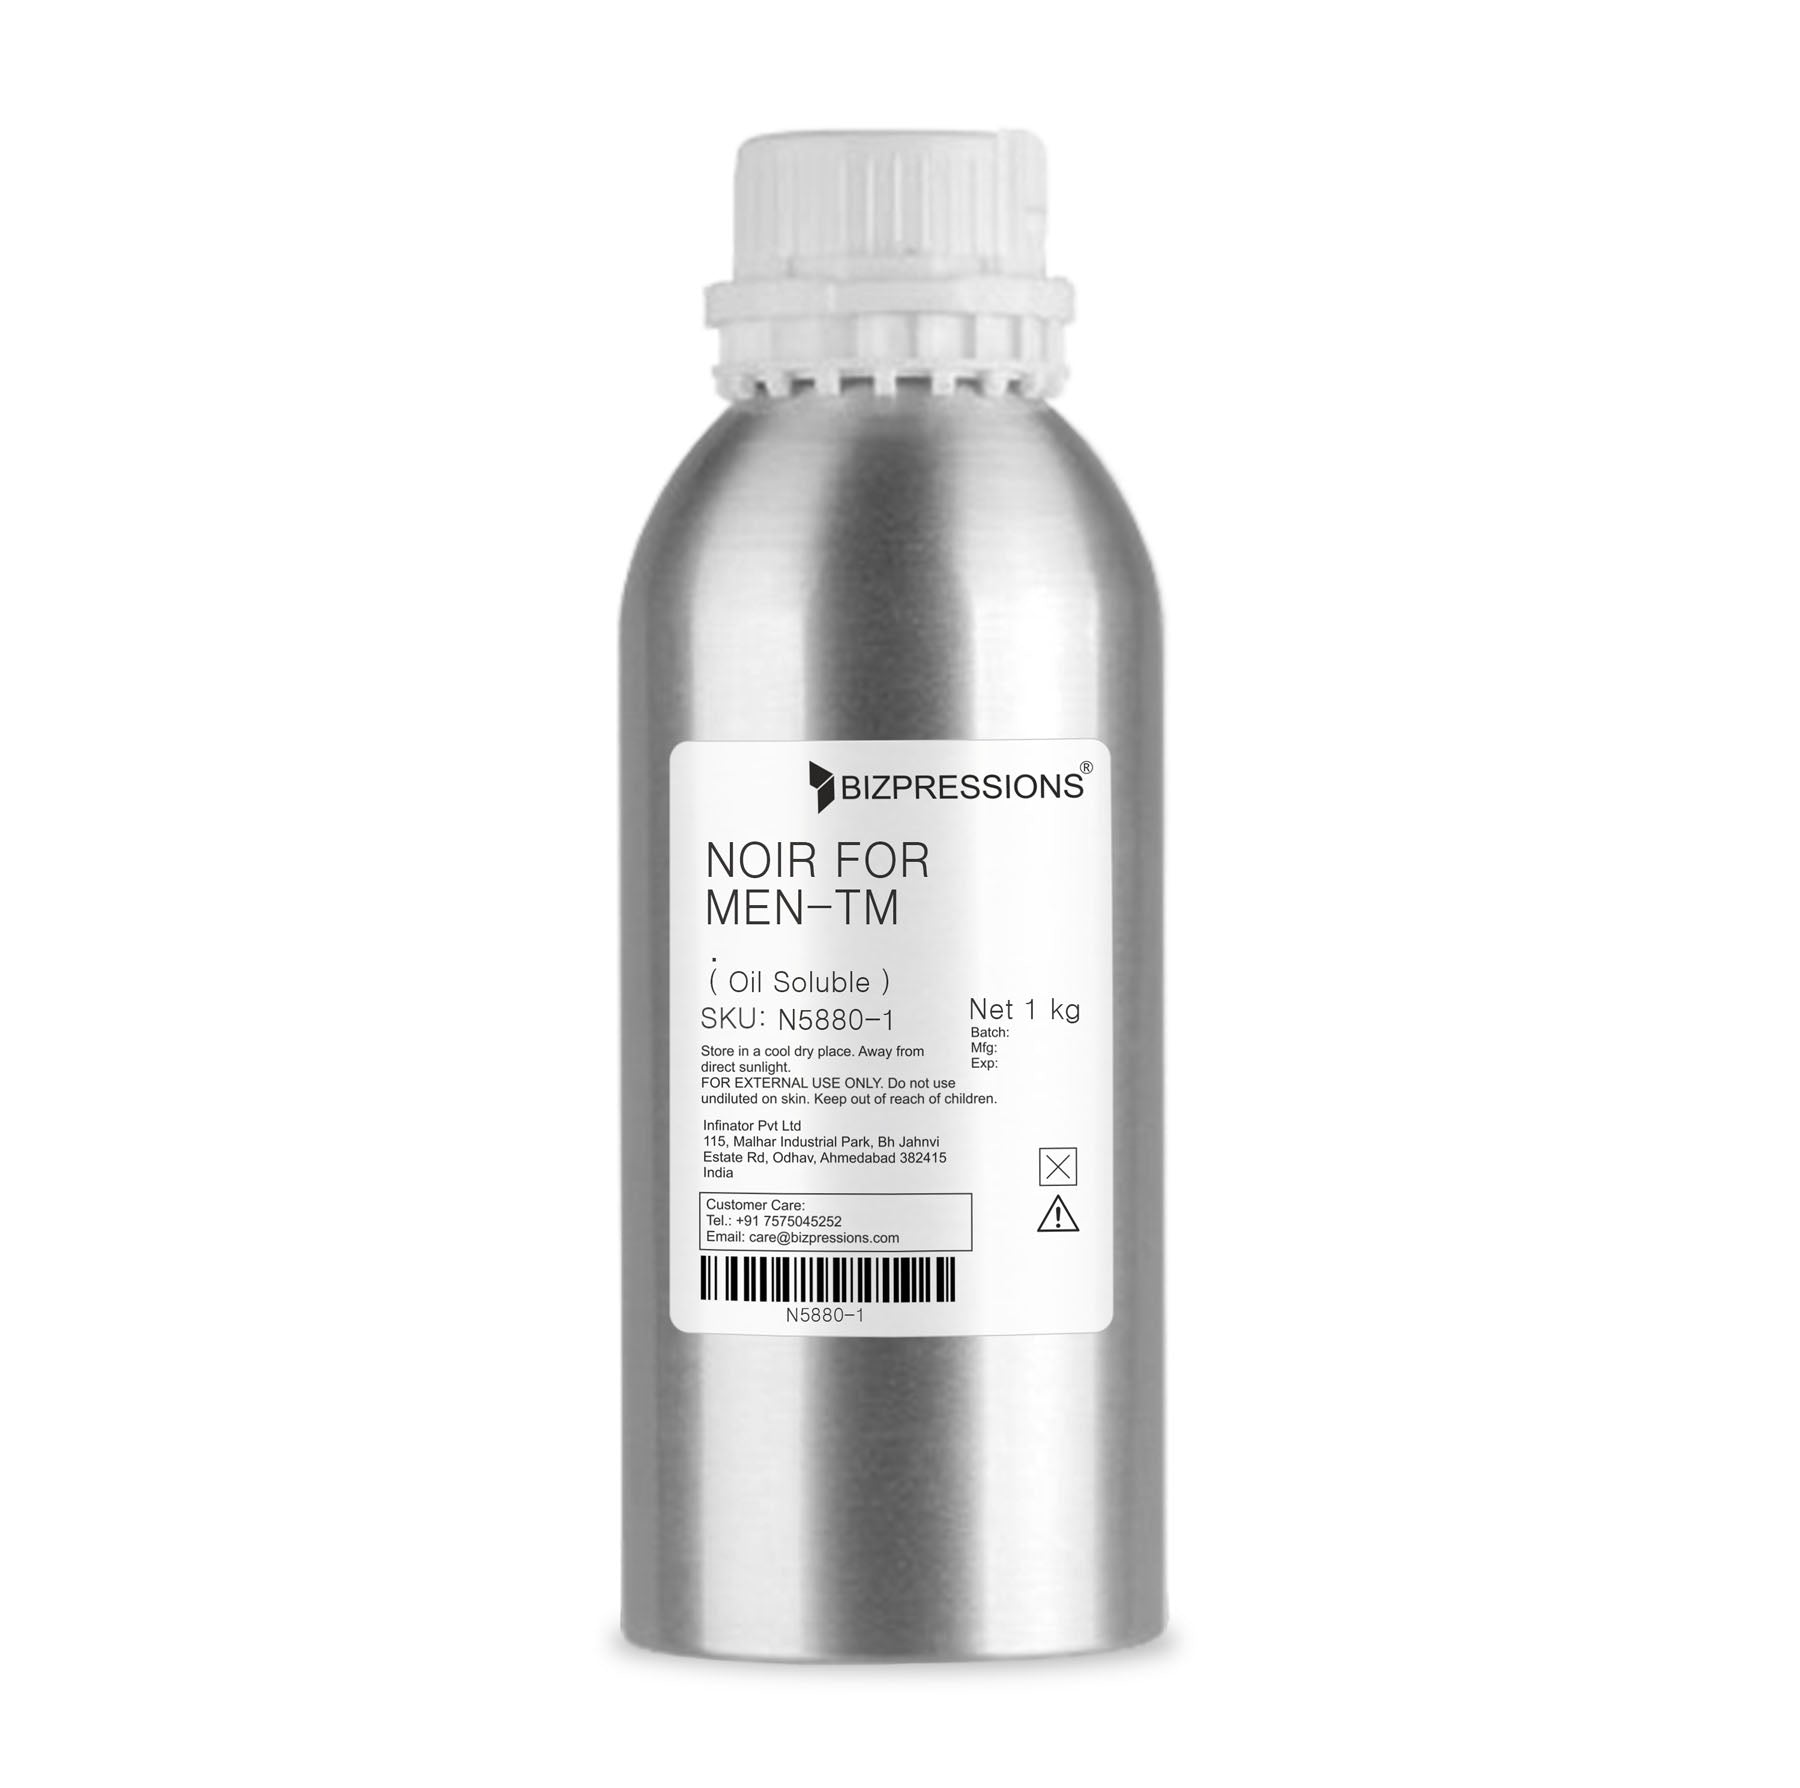 NOIR FOR MEN-TM - Fragrance ( Oil Soluble ) - 1 kg